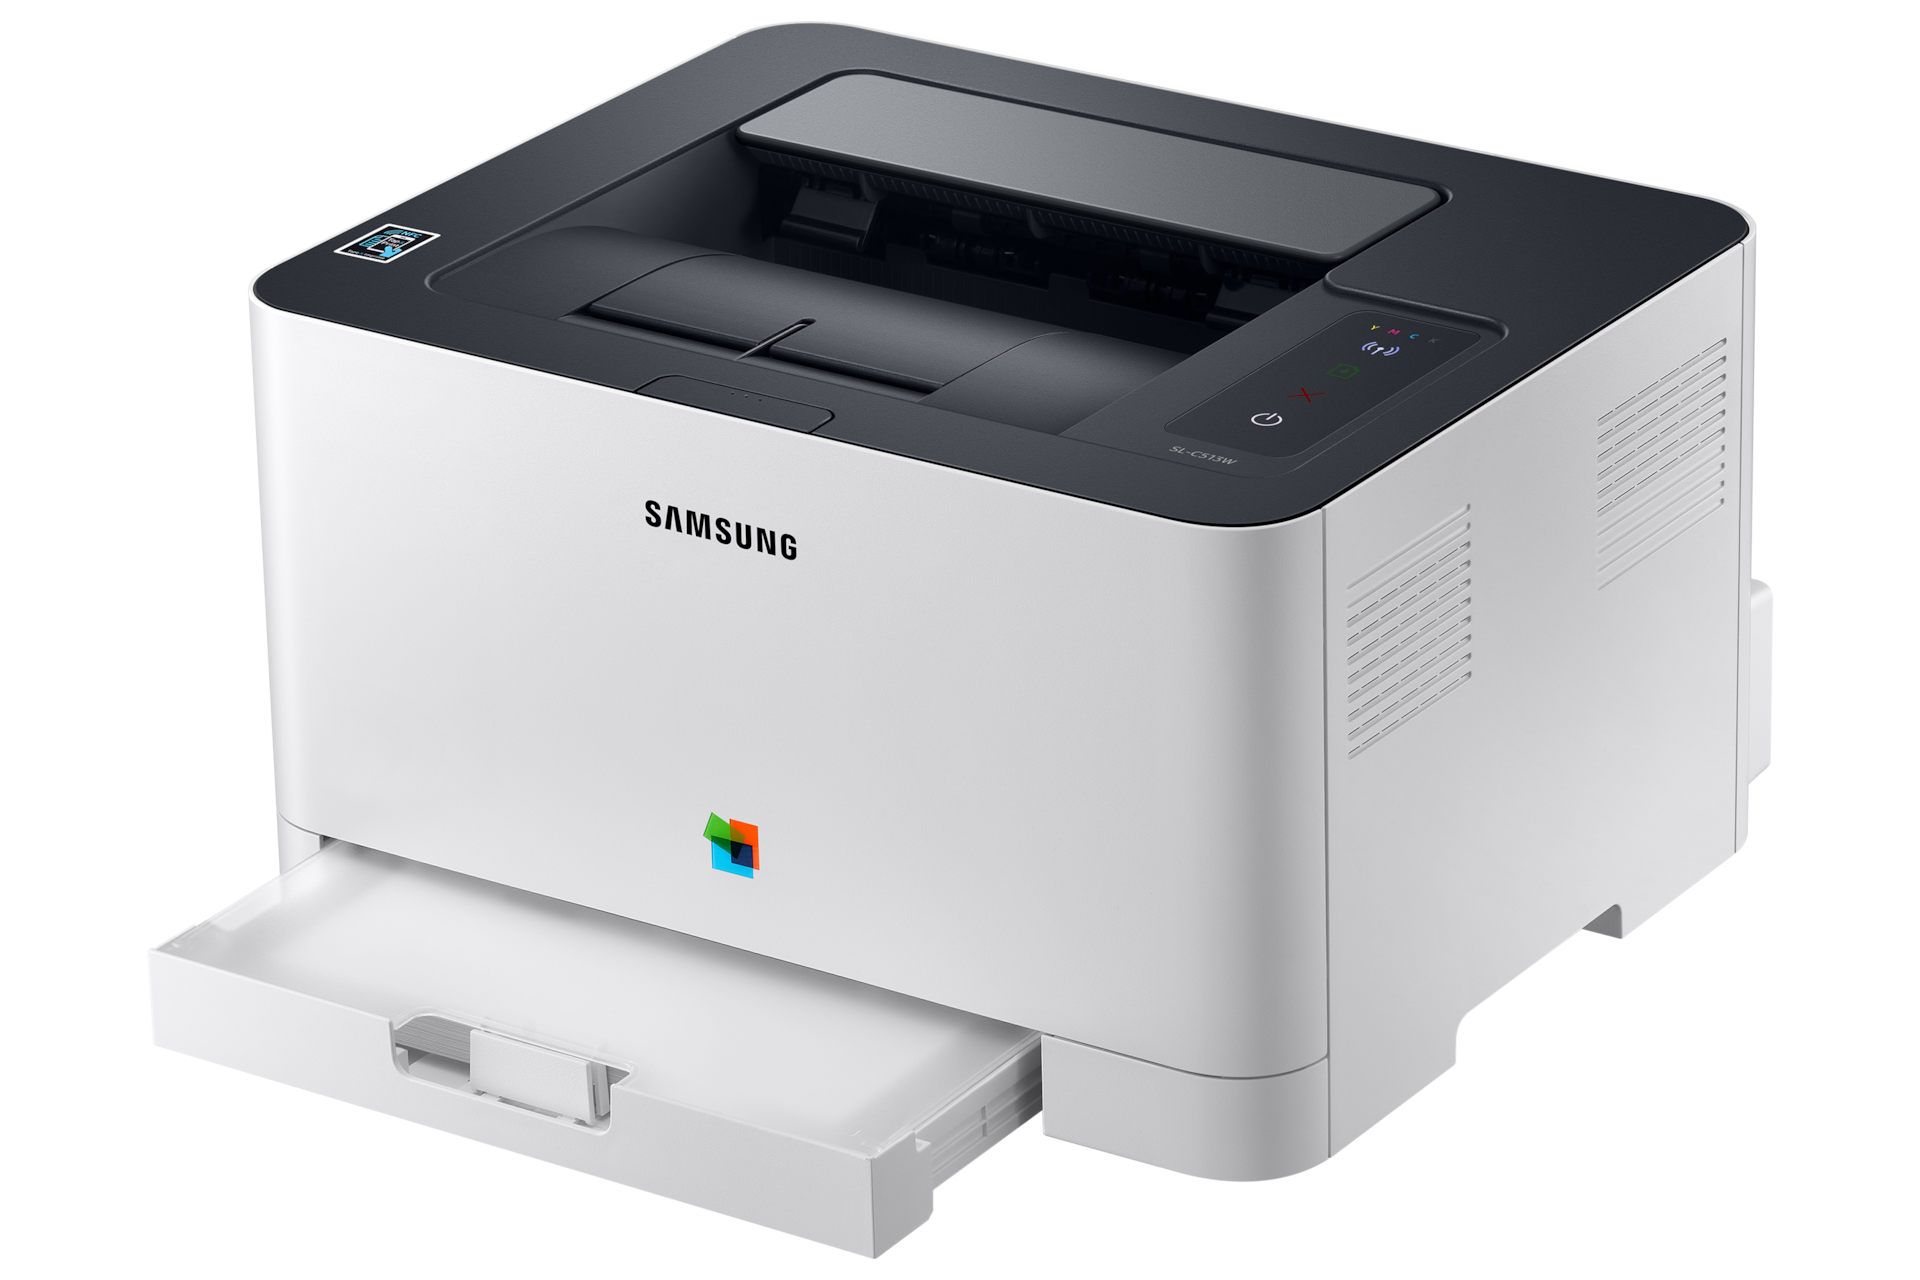 컬러 레이저 프린터 18/4 ppm 그레이 제품 우측면, 조작부 , A4 장착 이미지